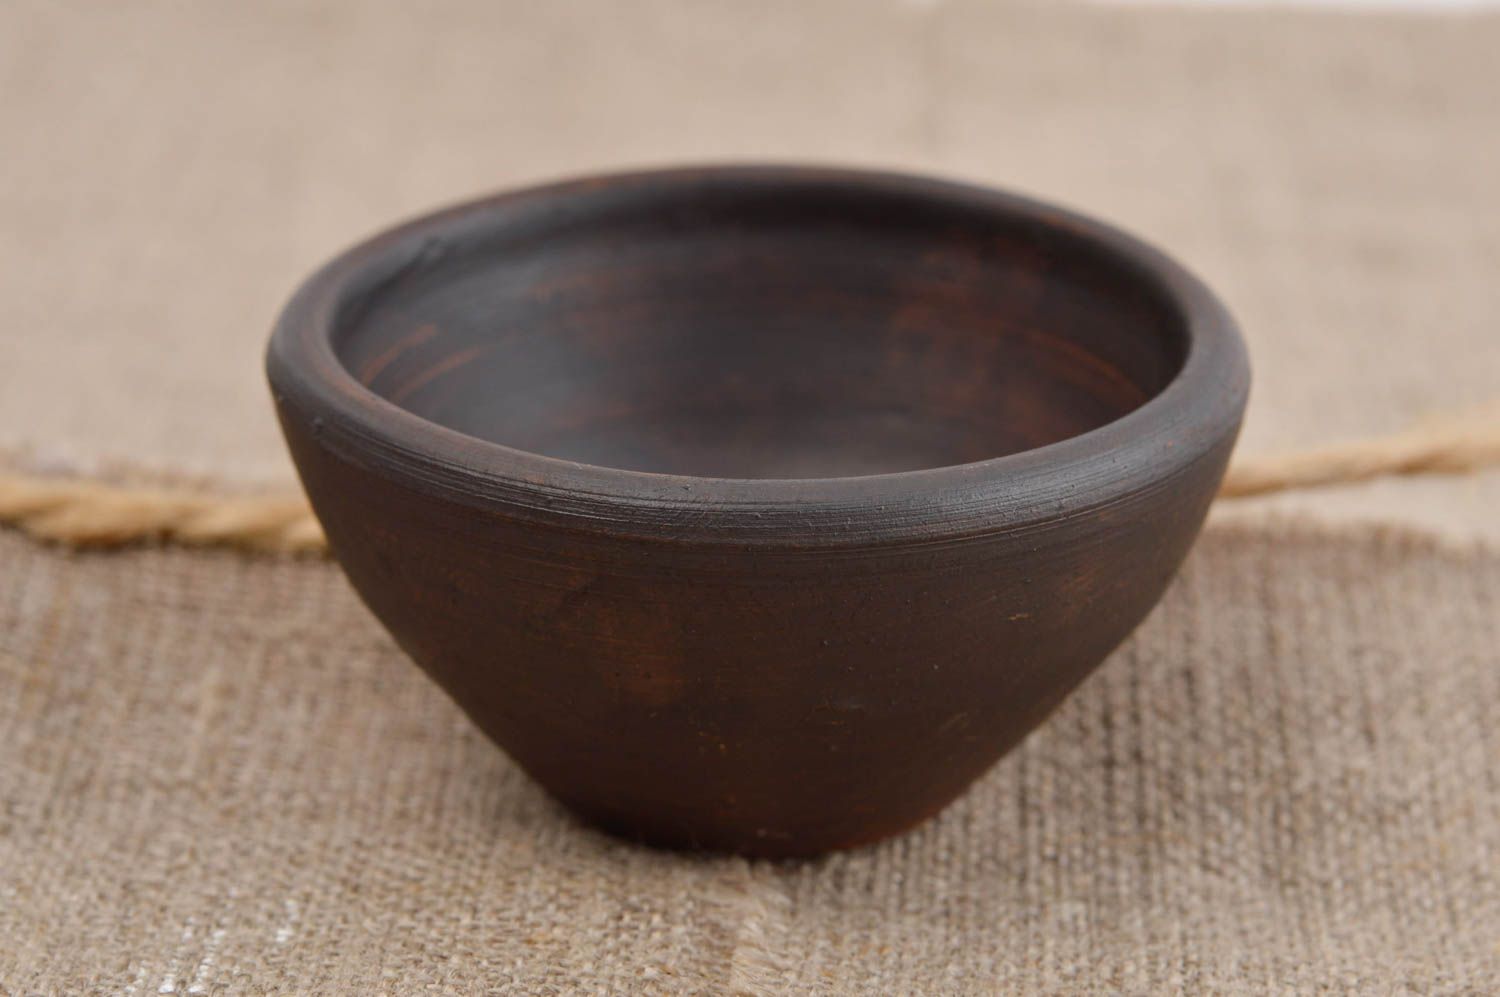 Unusual handmade ceramic bowl kitchen supplies home goods kitchen design photo 1